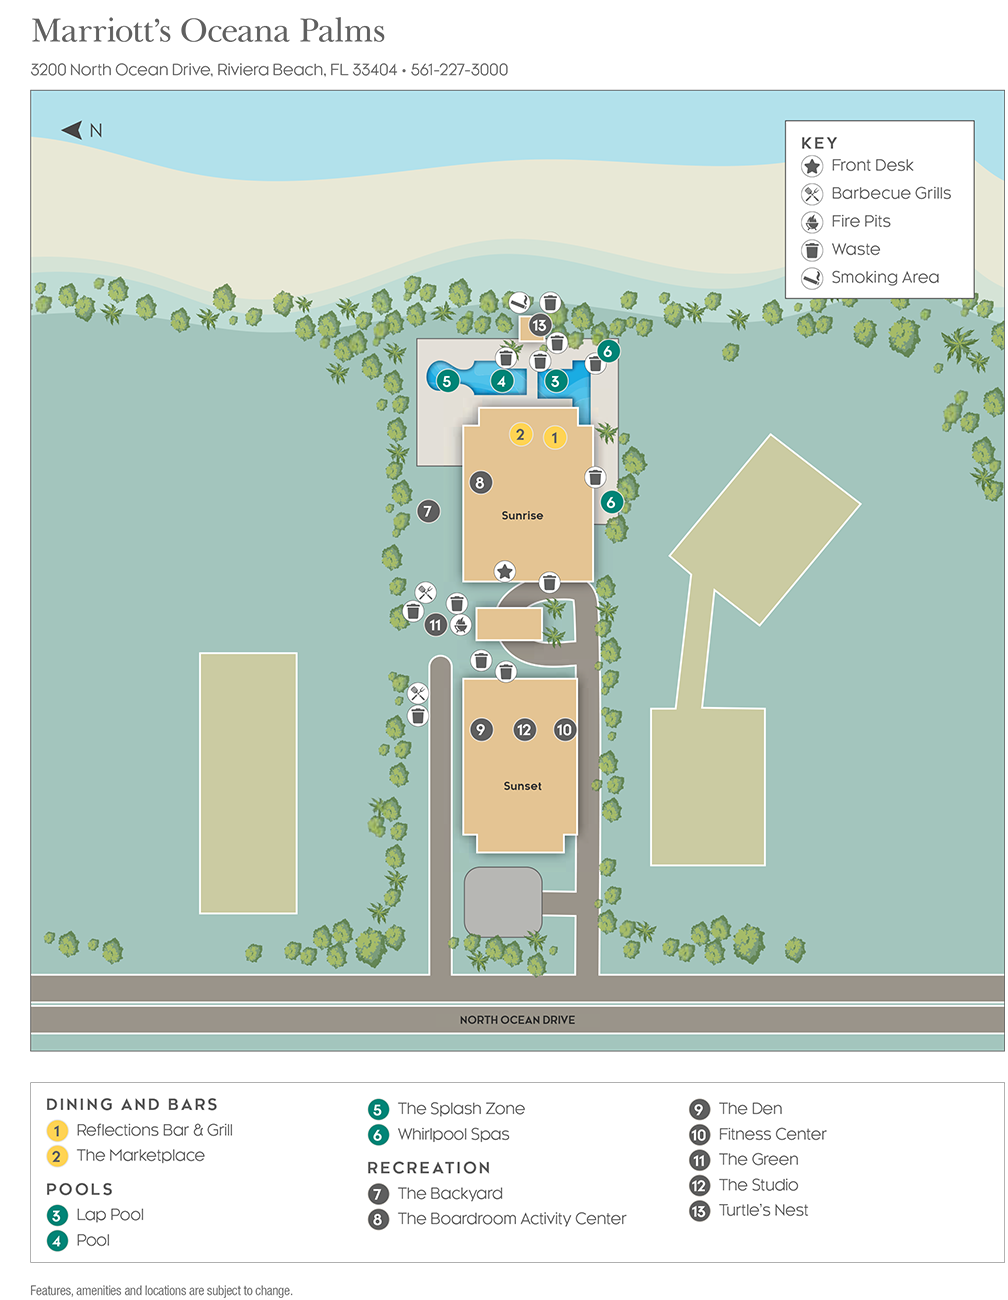 Marriott Oceana Palms Resort Map